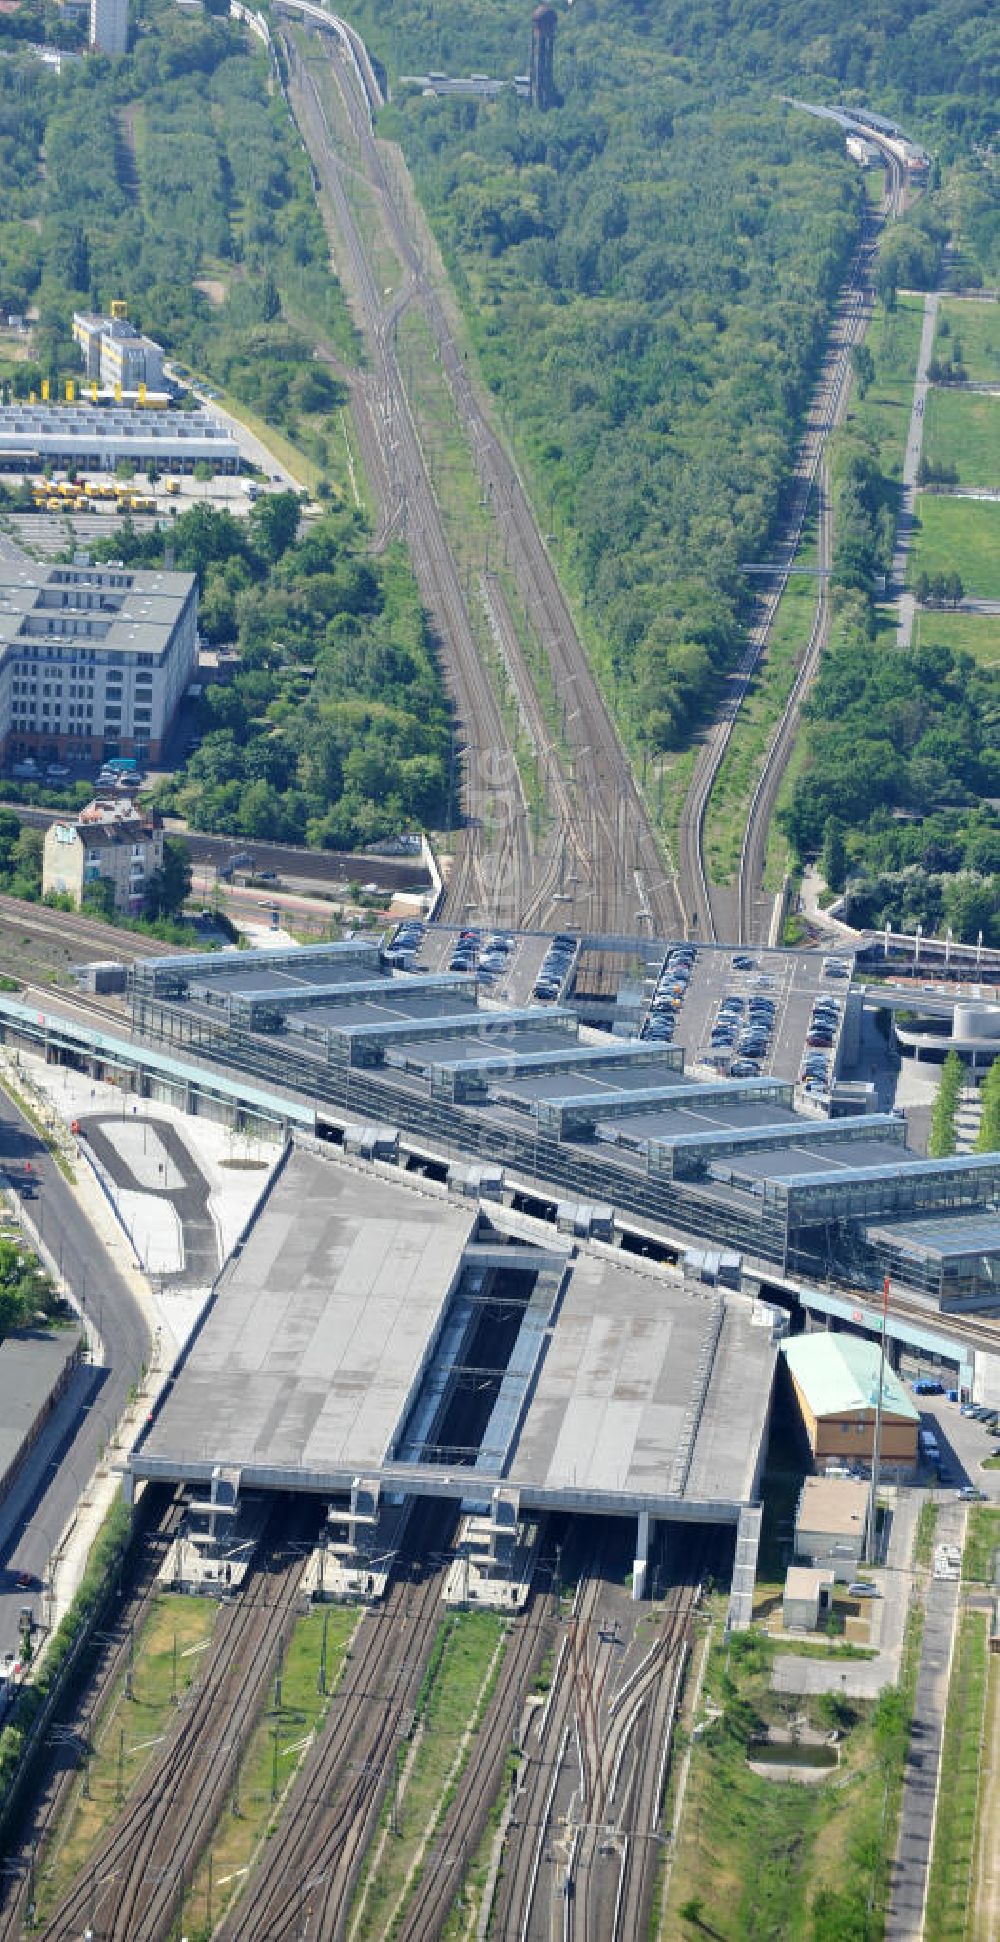 Luftaufnahme Berlin Schöneberg - Bahnhof / railway station Südkreuz in Berlin-Schöneberg